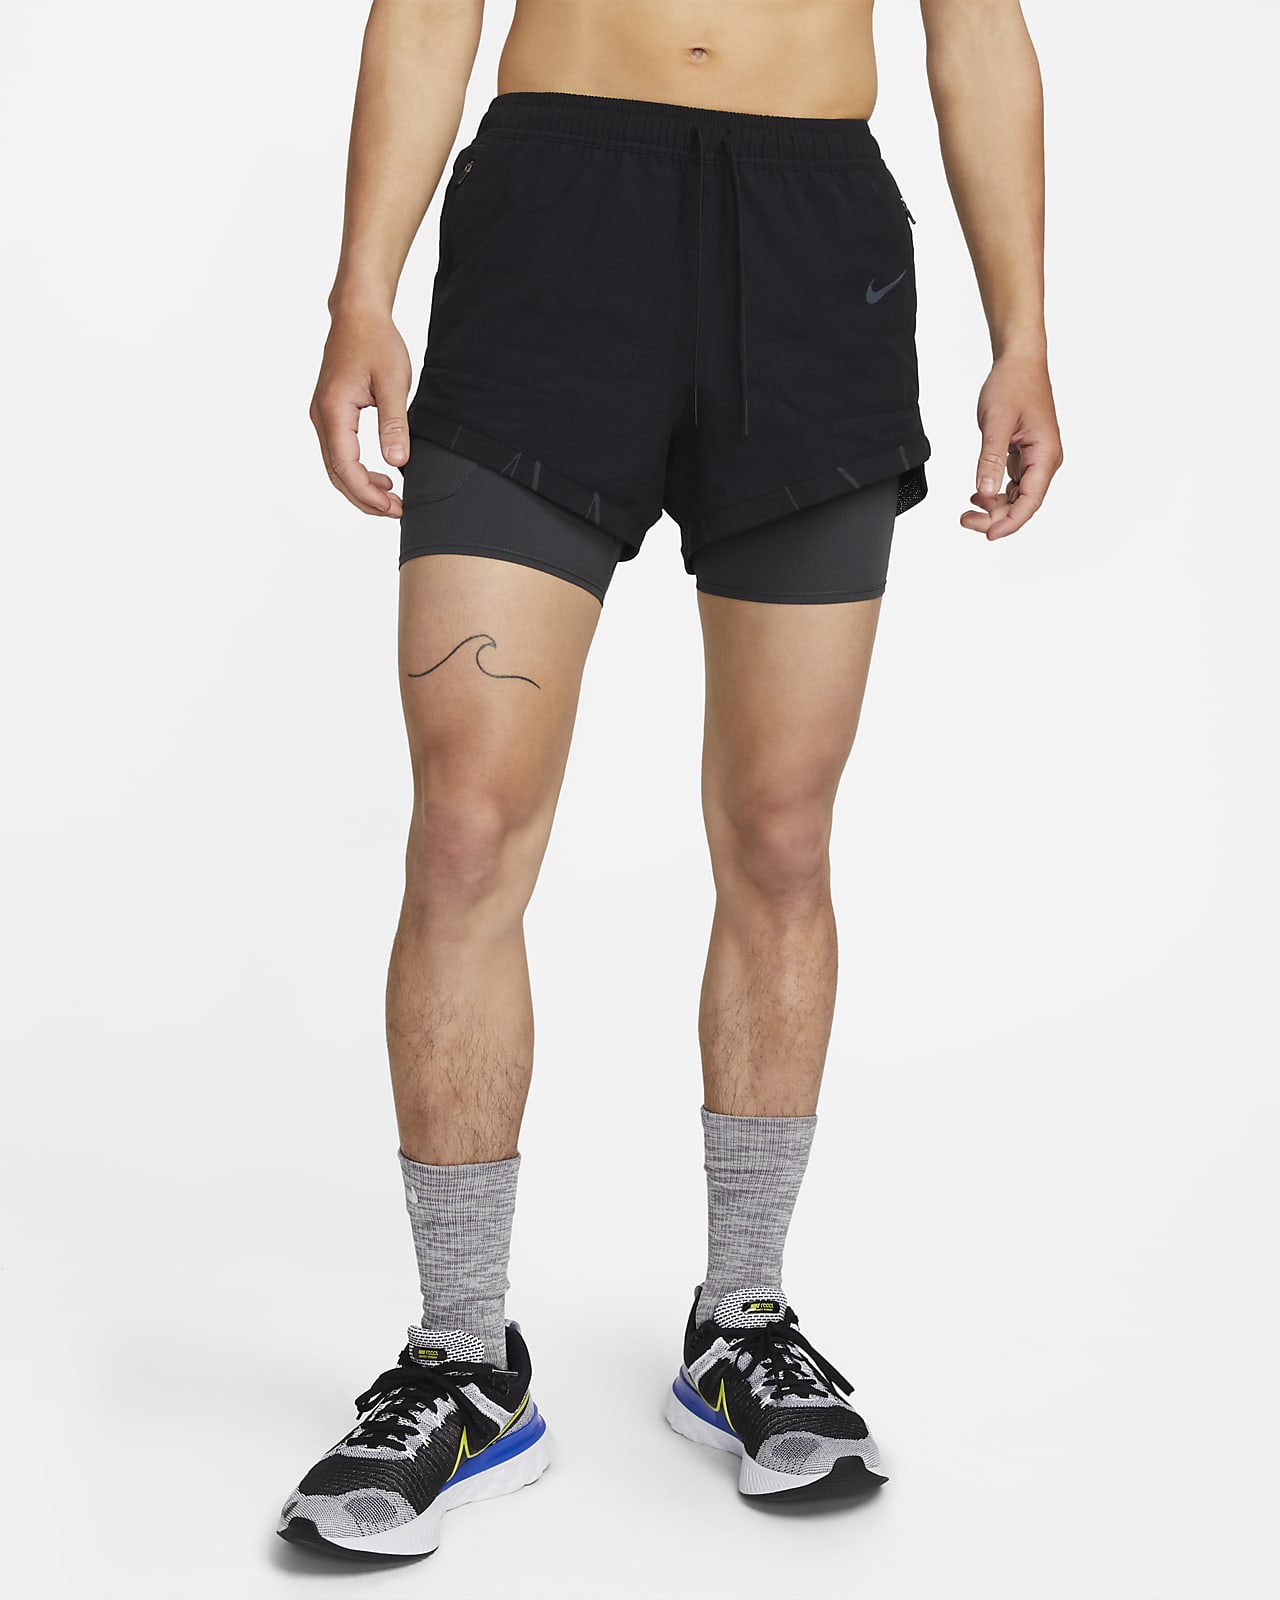 กางเกงวิ่งขาสั้น 3-in-1 Pinnacle ผู้ชาย Nike Dri-FIT Run Division